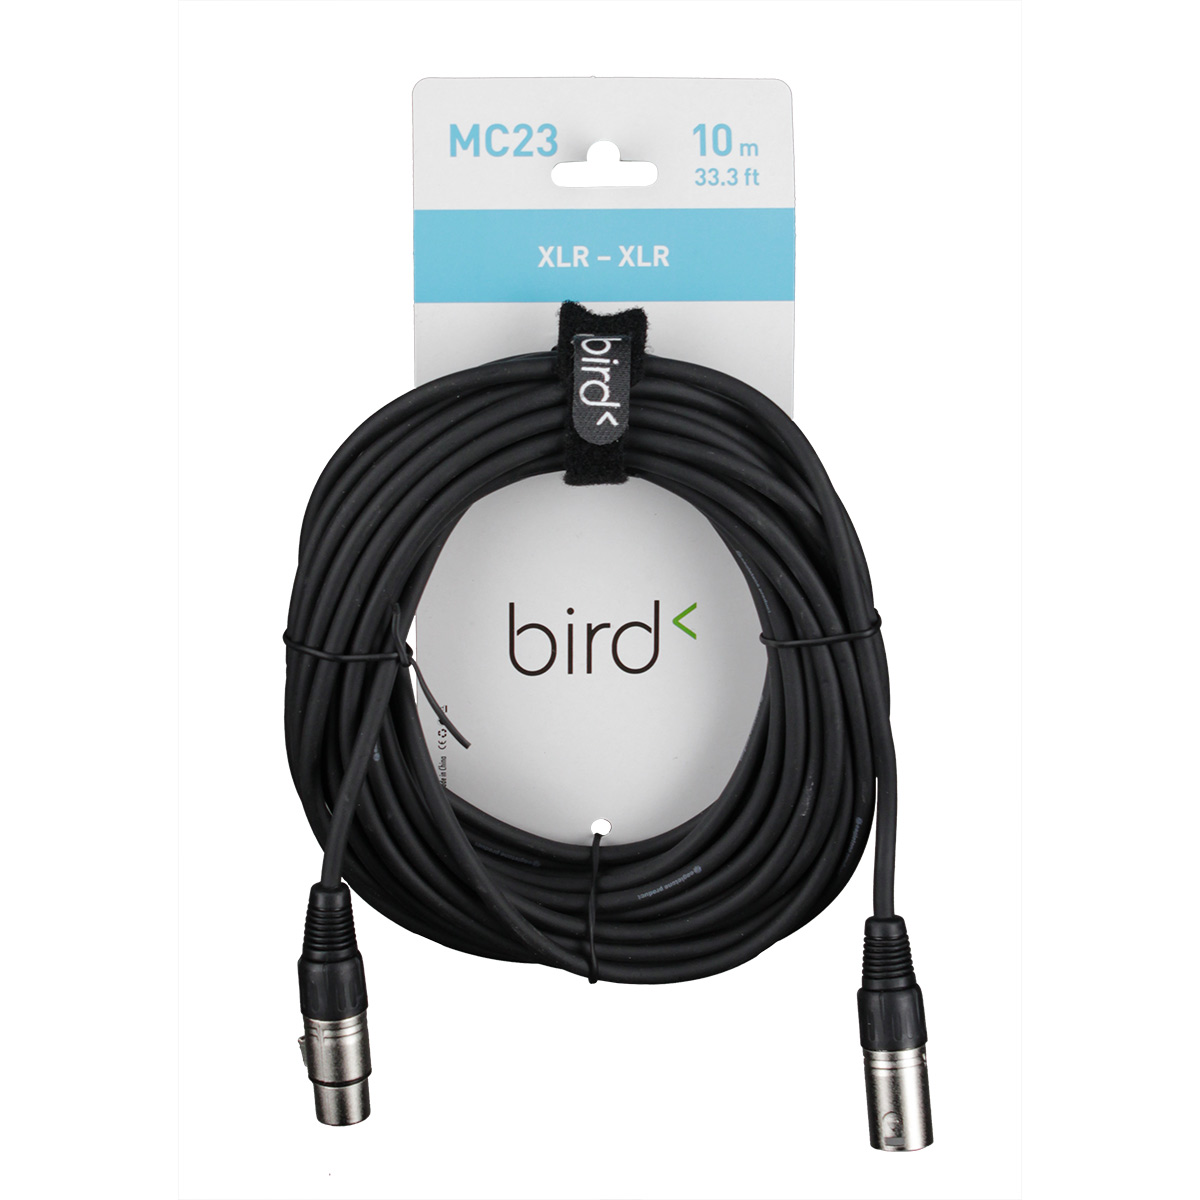 BIRD MC23 - XLR / XLR - 33.3FT